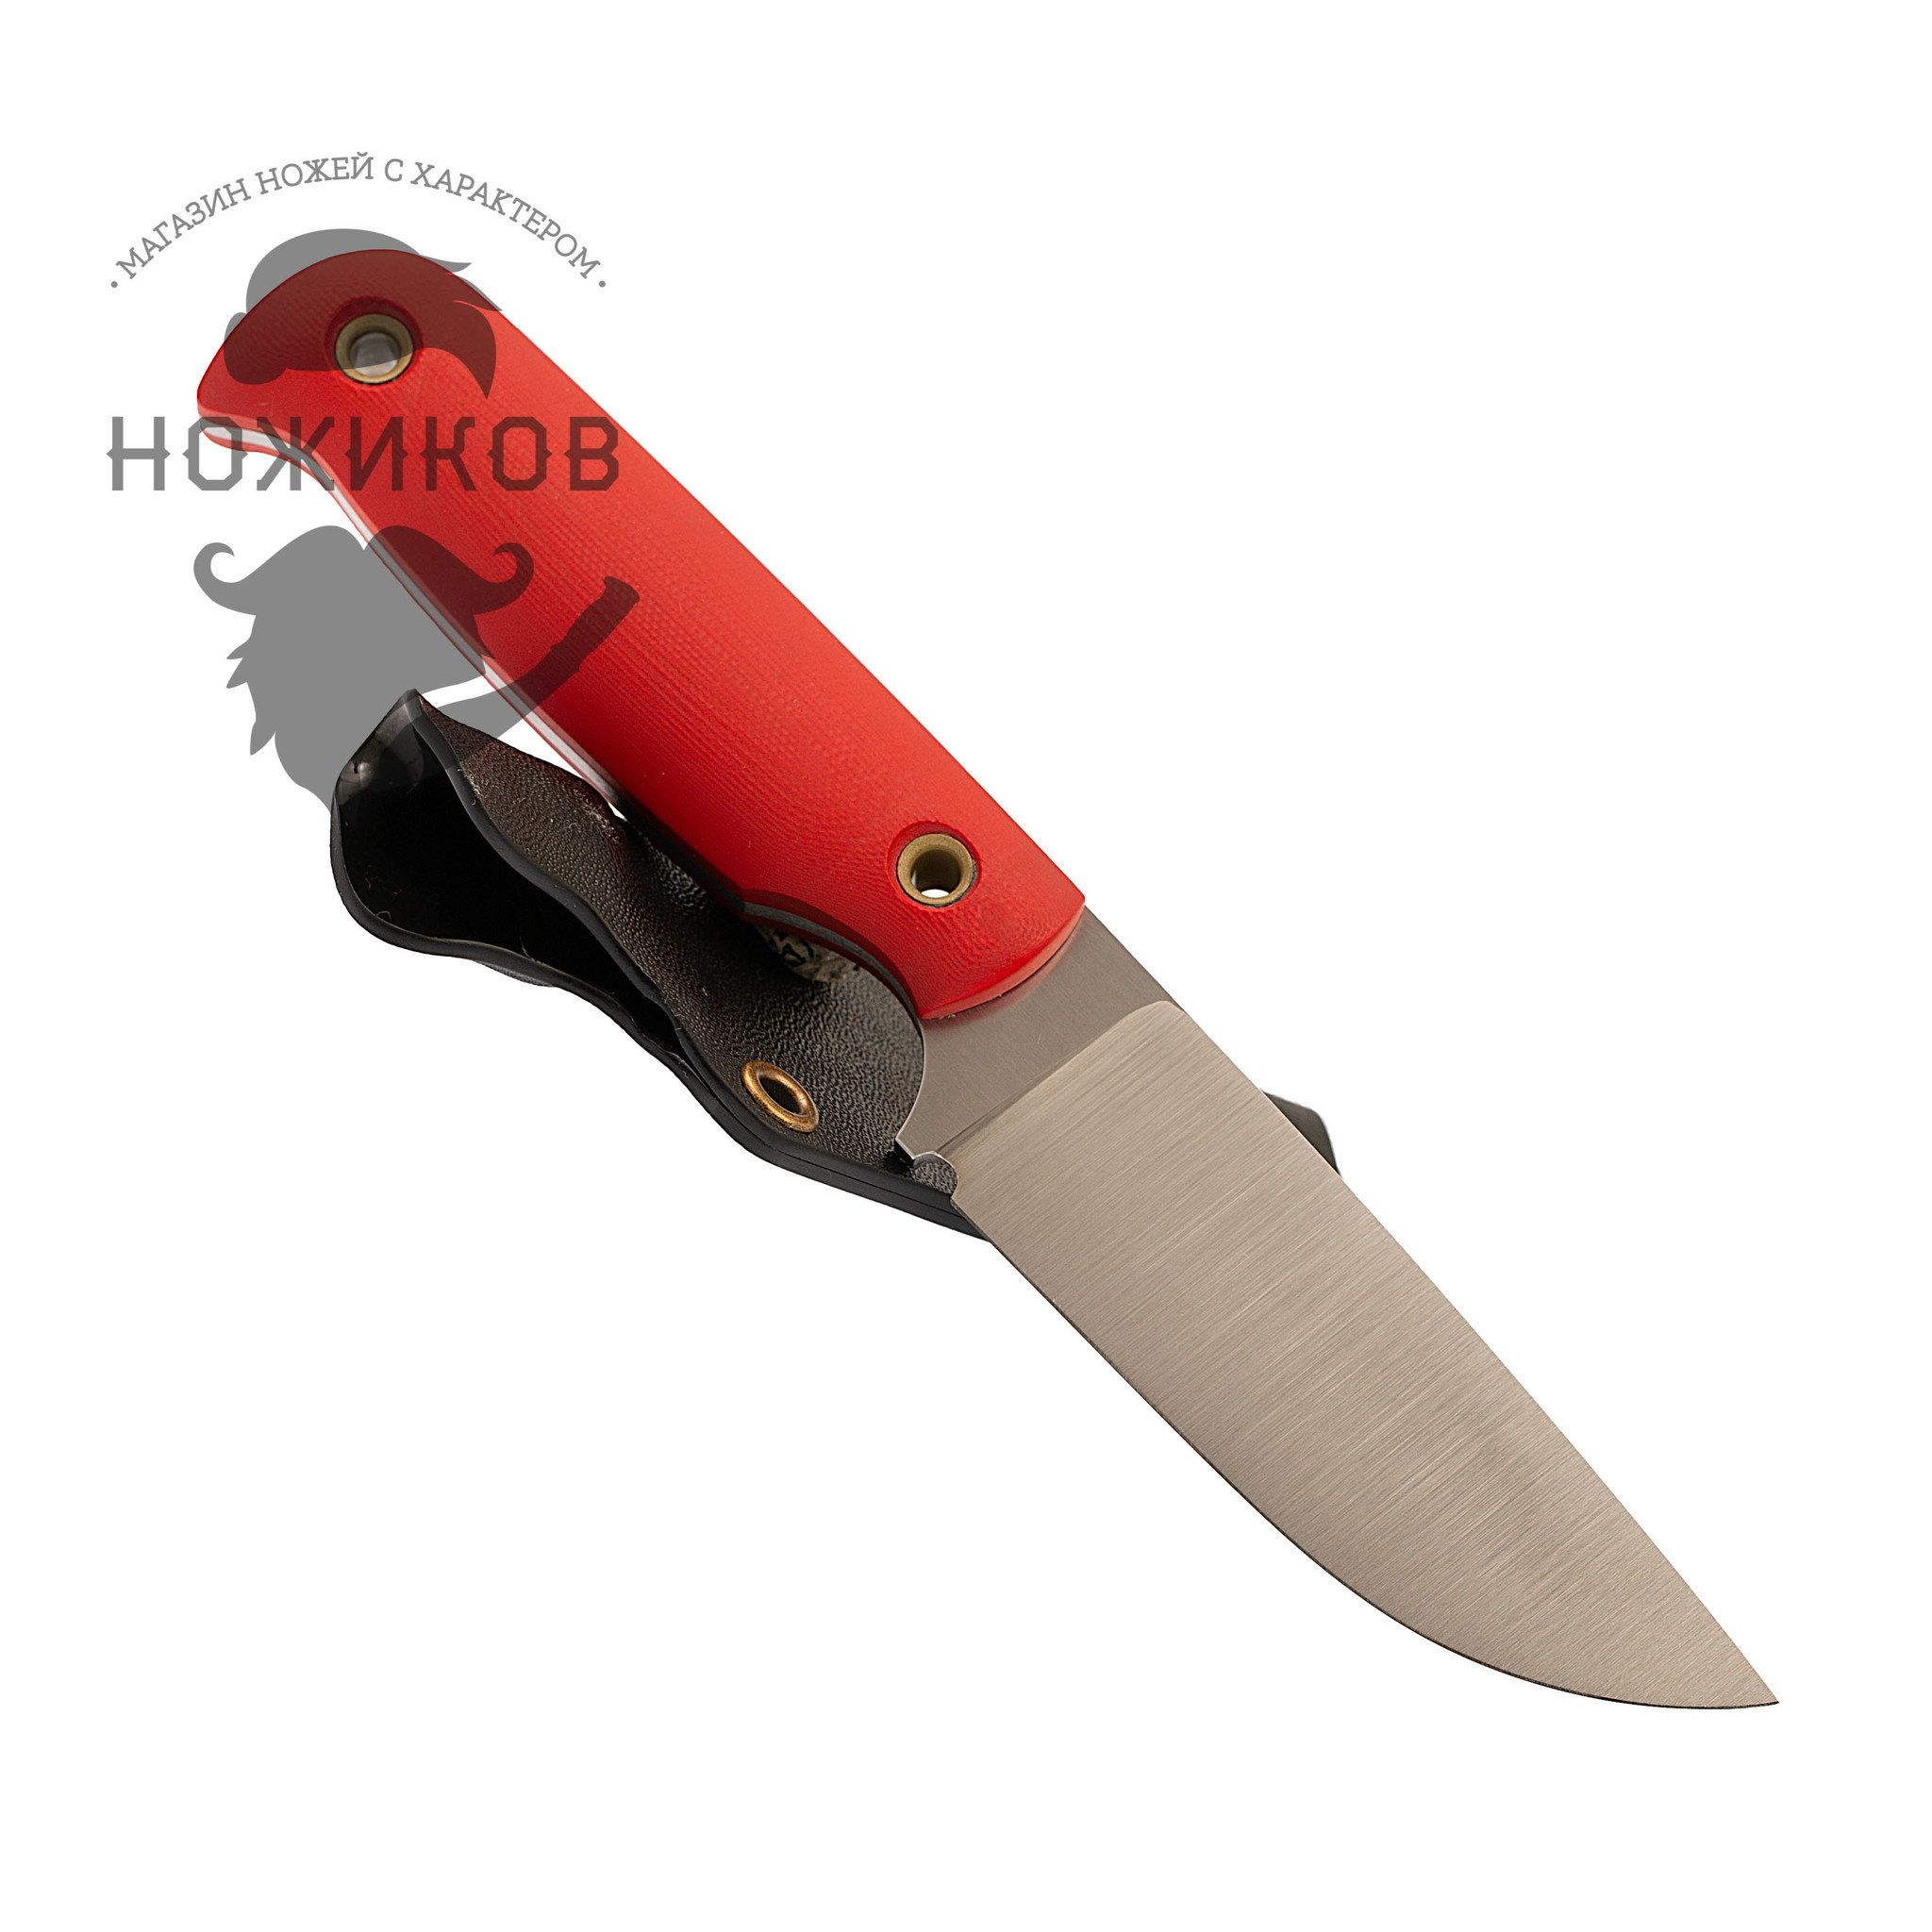 Нож Хоббит, сталь N690, рукоять G10 красная от Ножиков